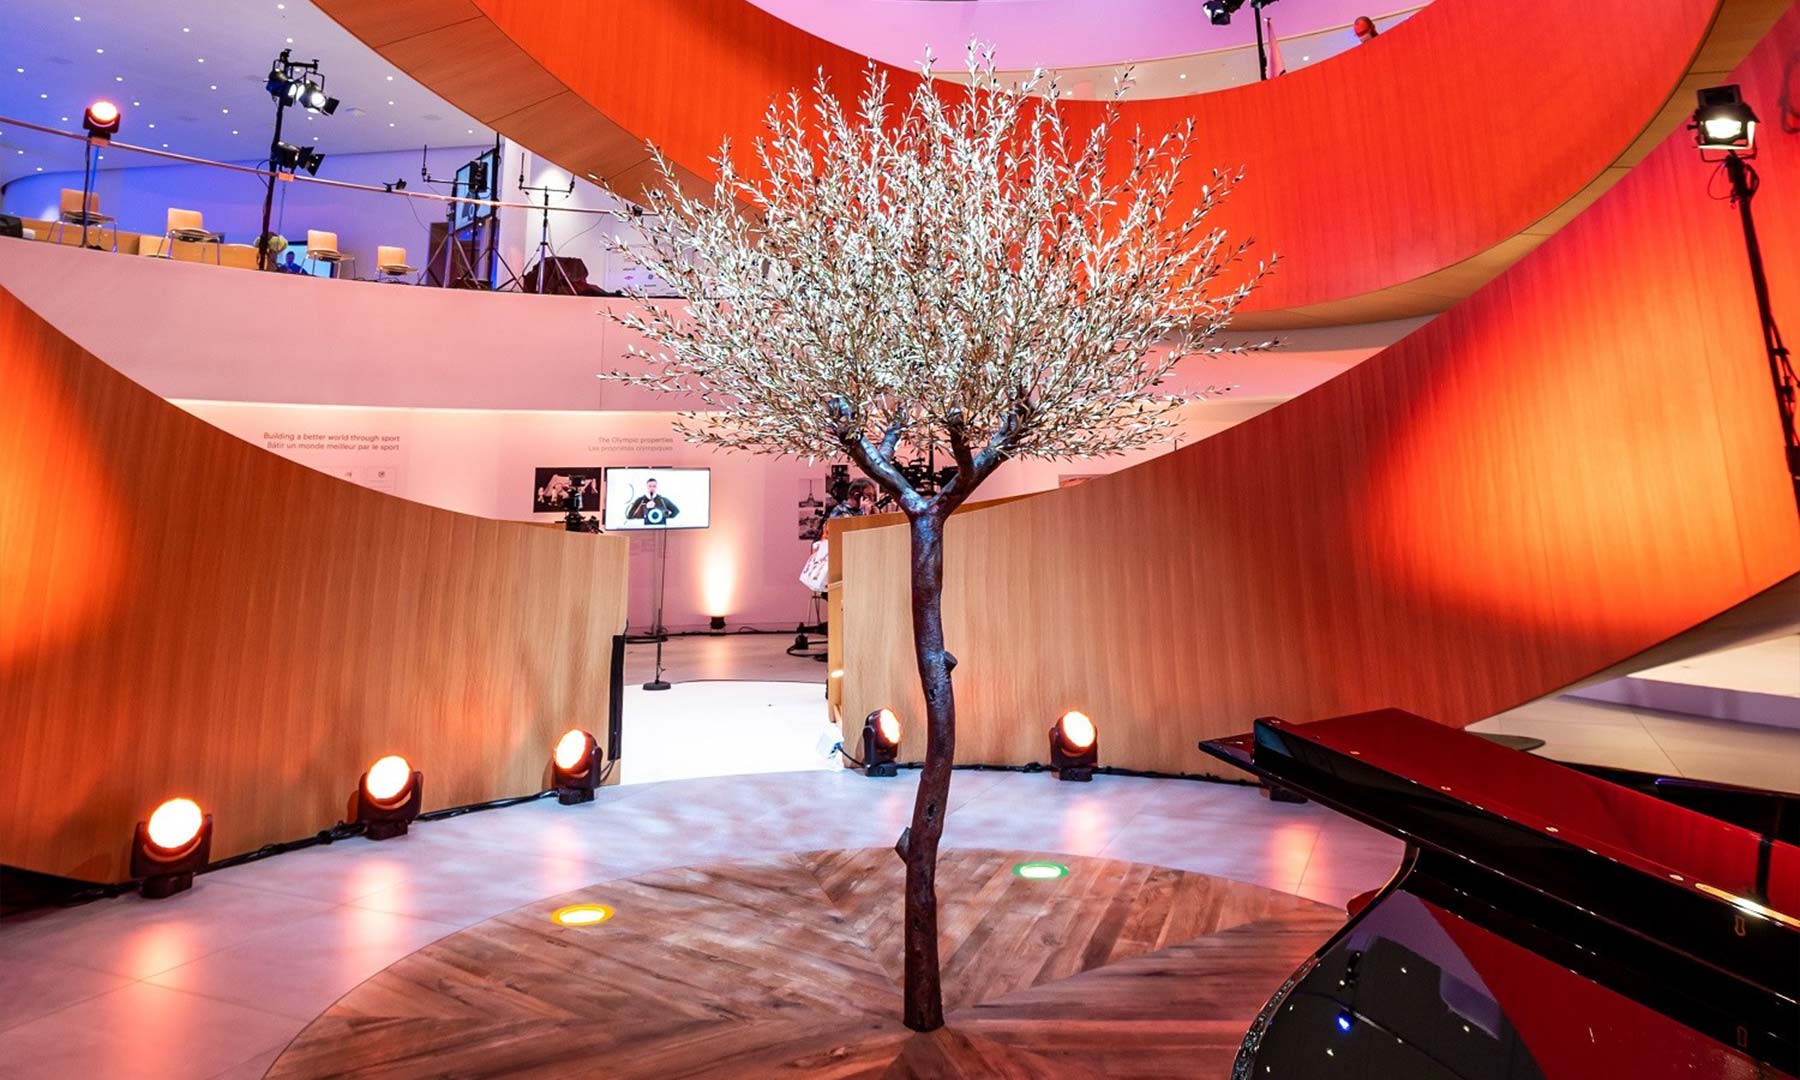 Einzelner Baum in einem orange beleuchteten Raum mit Klavier daneben